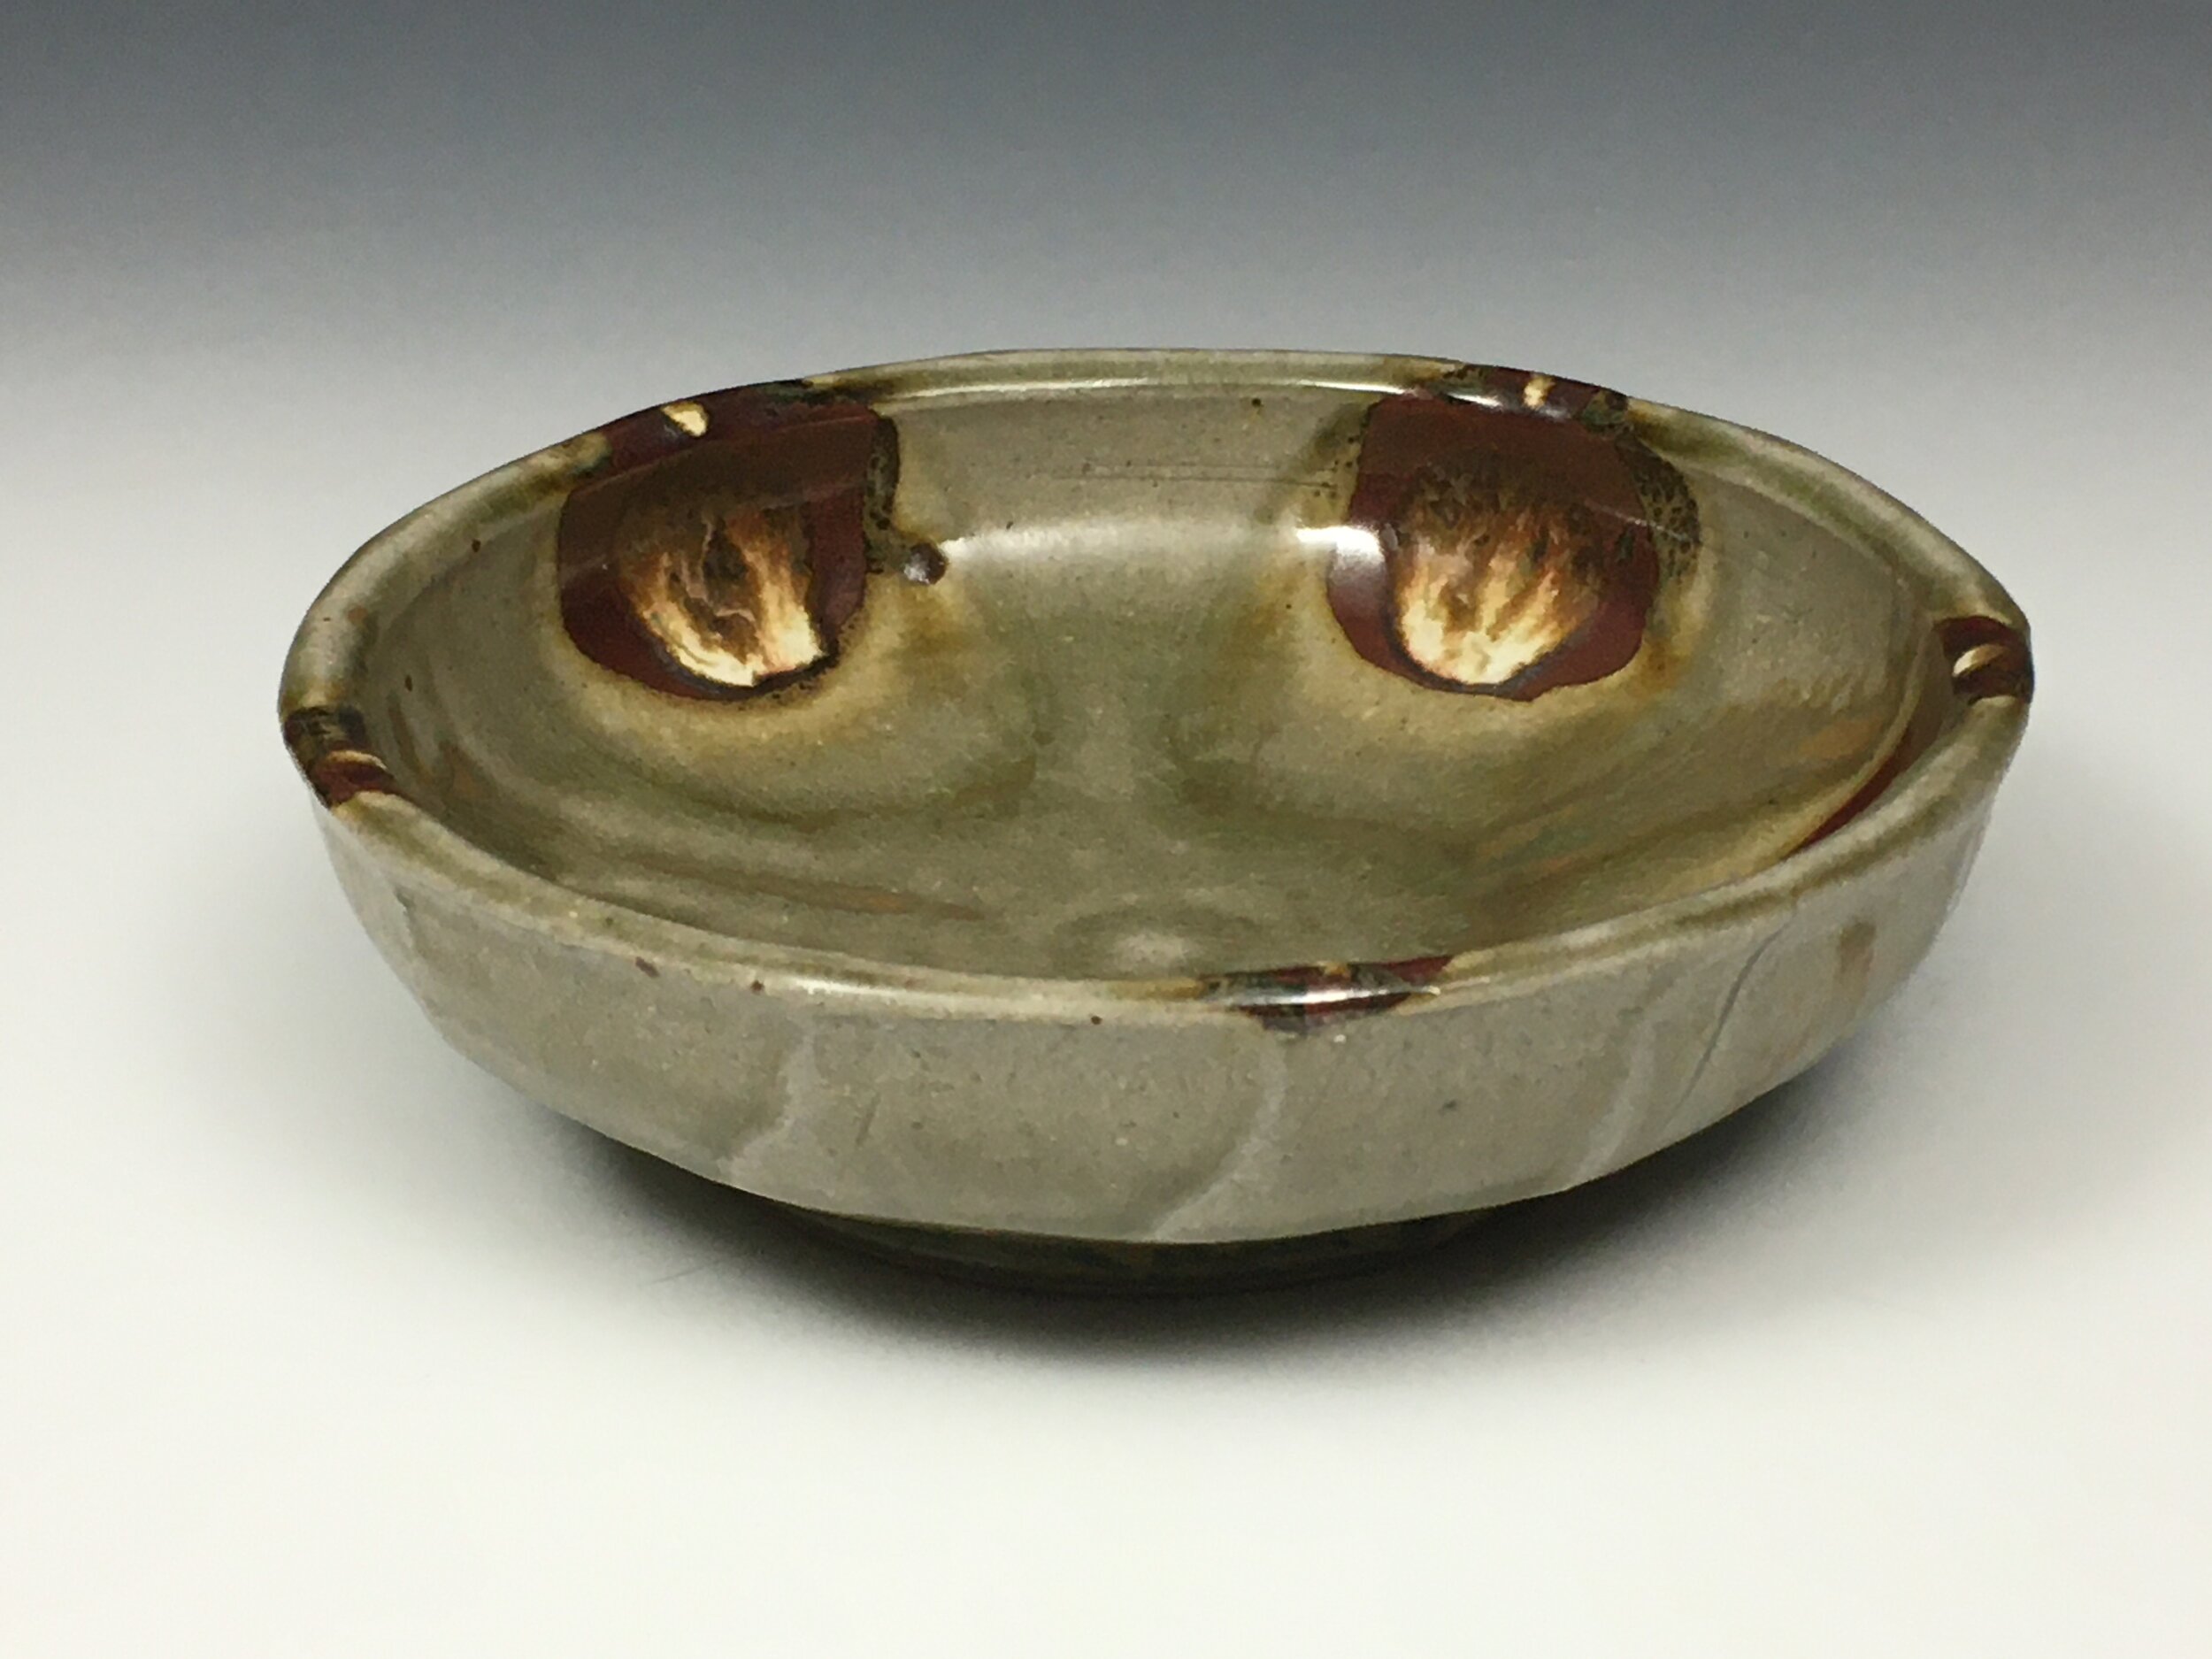    Bowl  , 2.5” x 7.5”, stoneware 